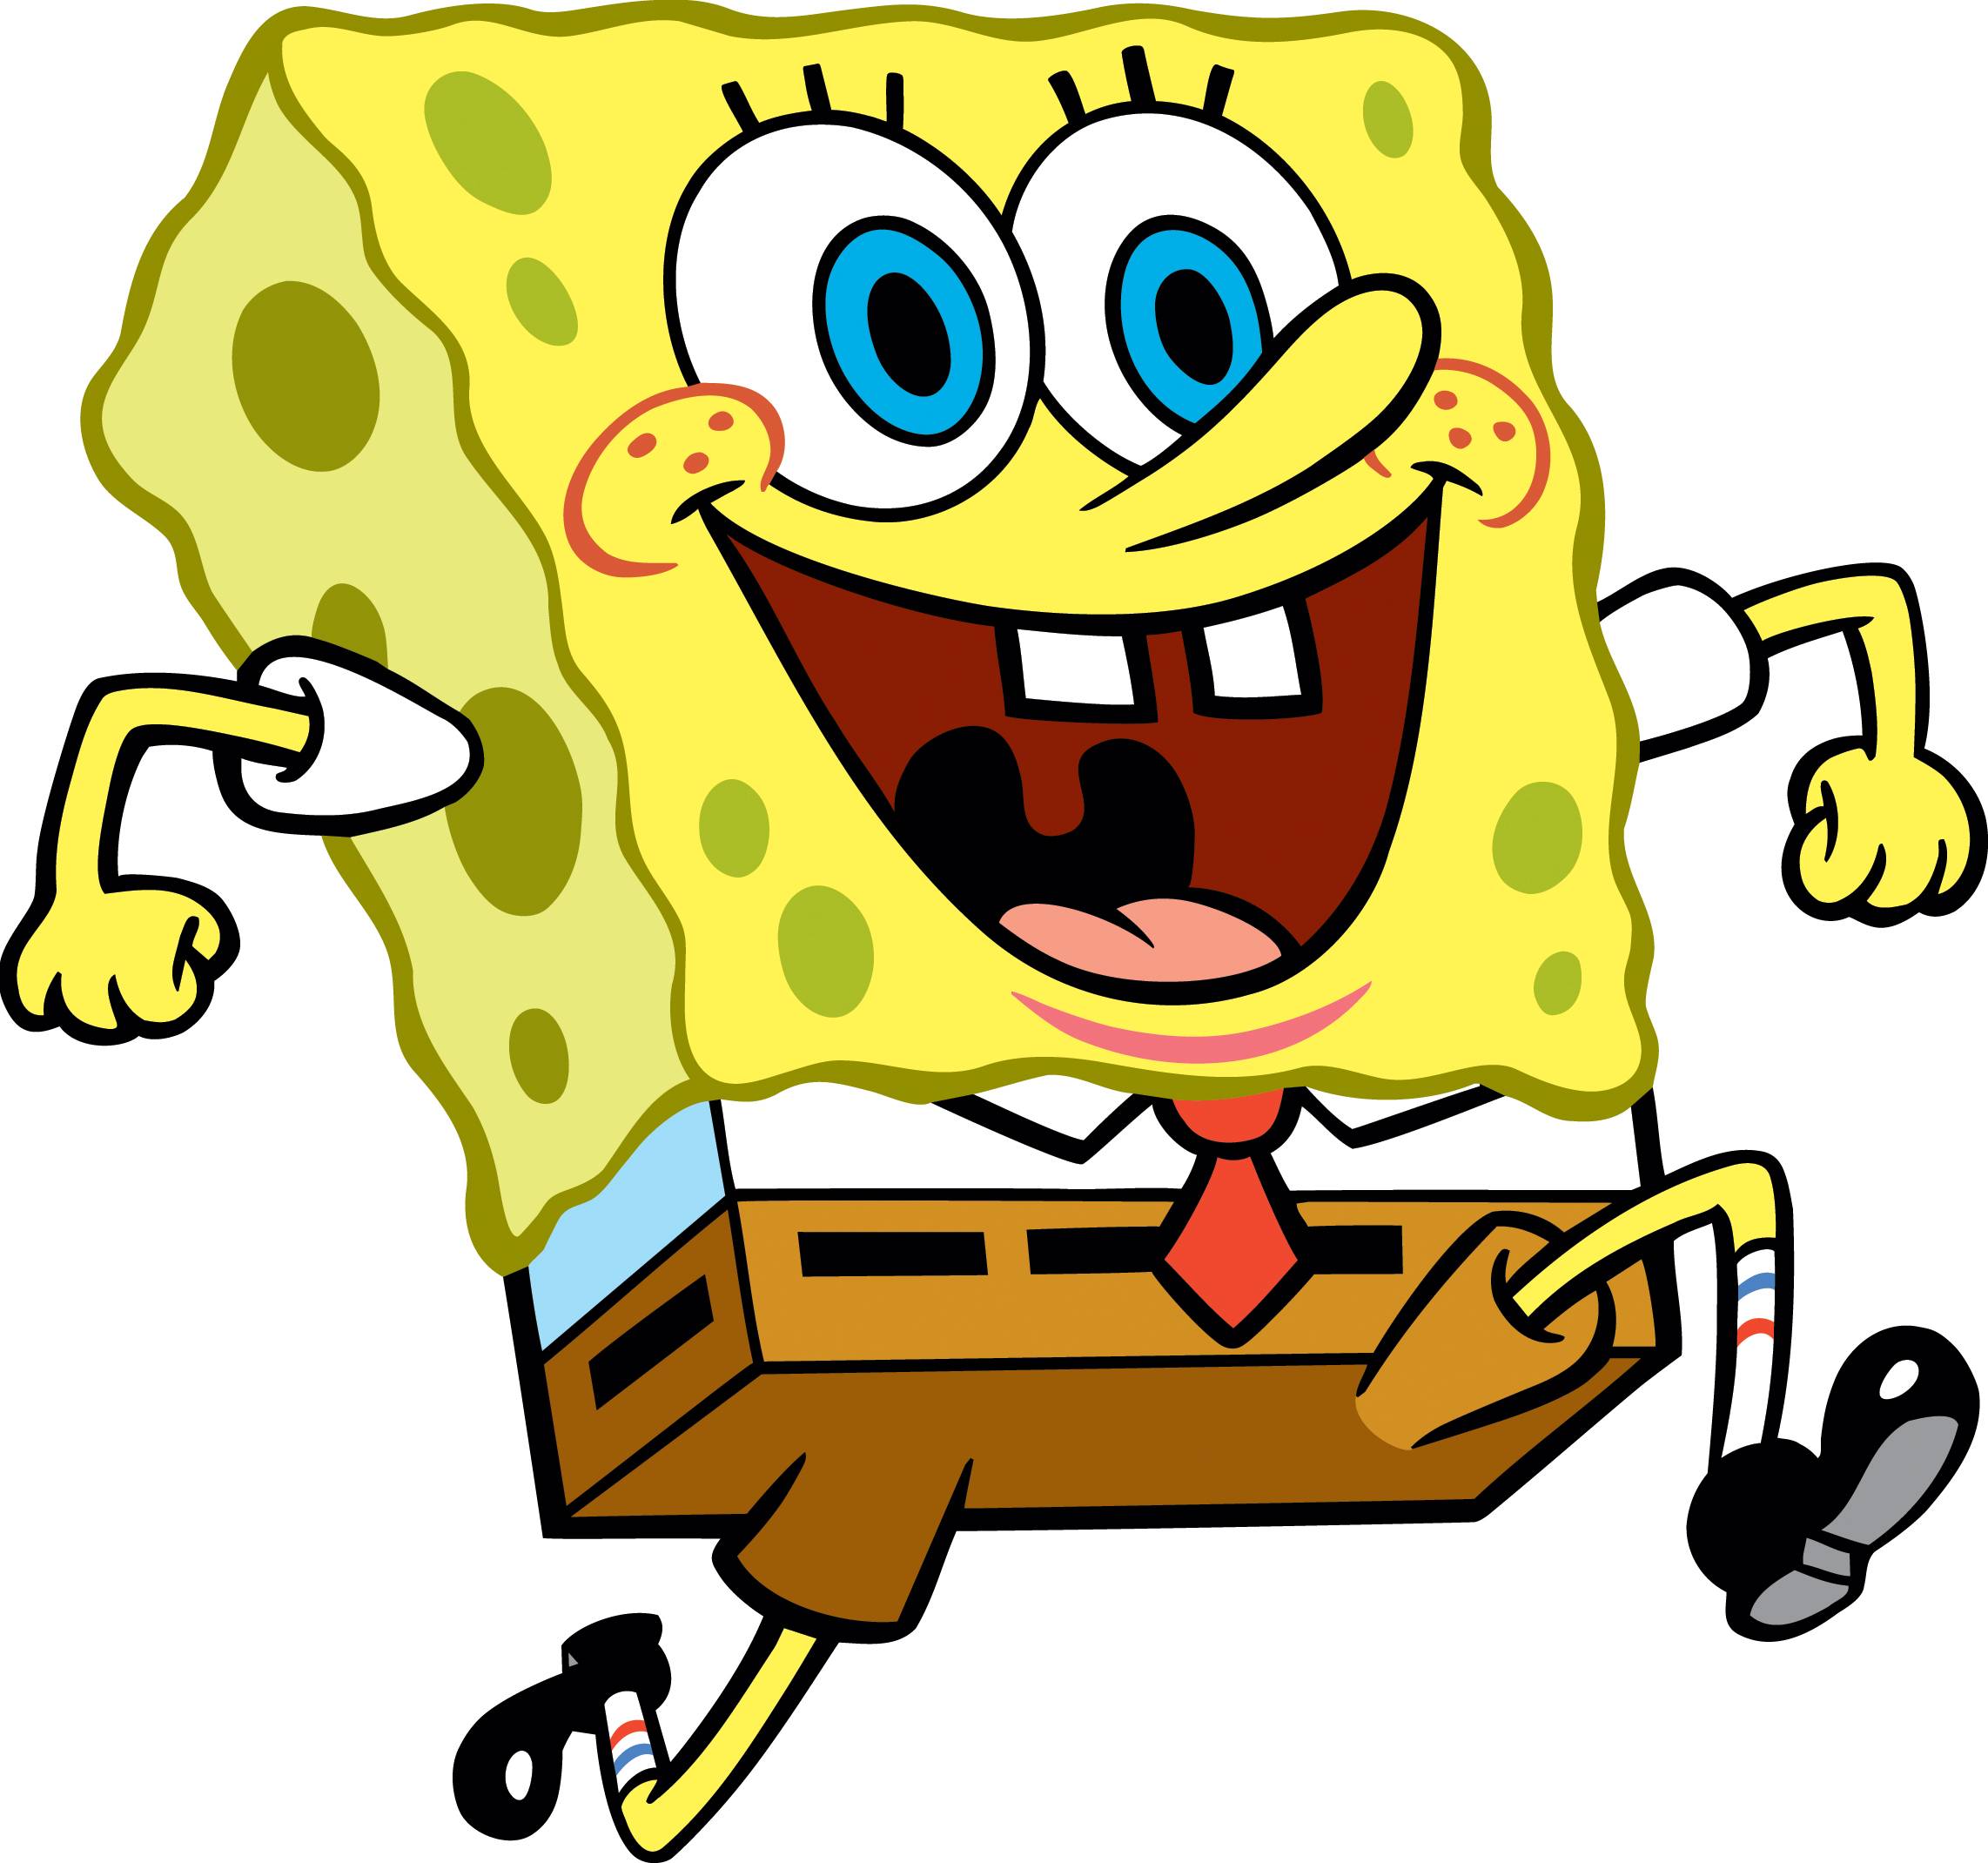 Sopngebob Square Pants - SpongeBoB Square Pants Picture